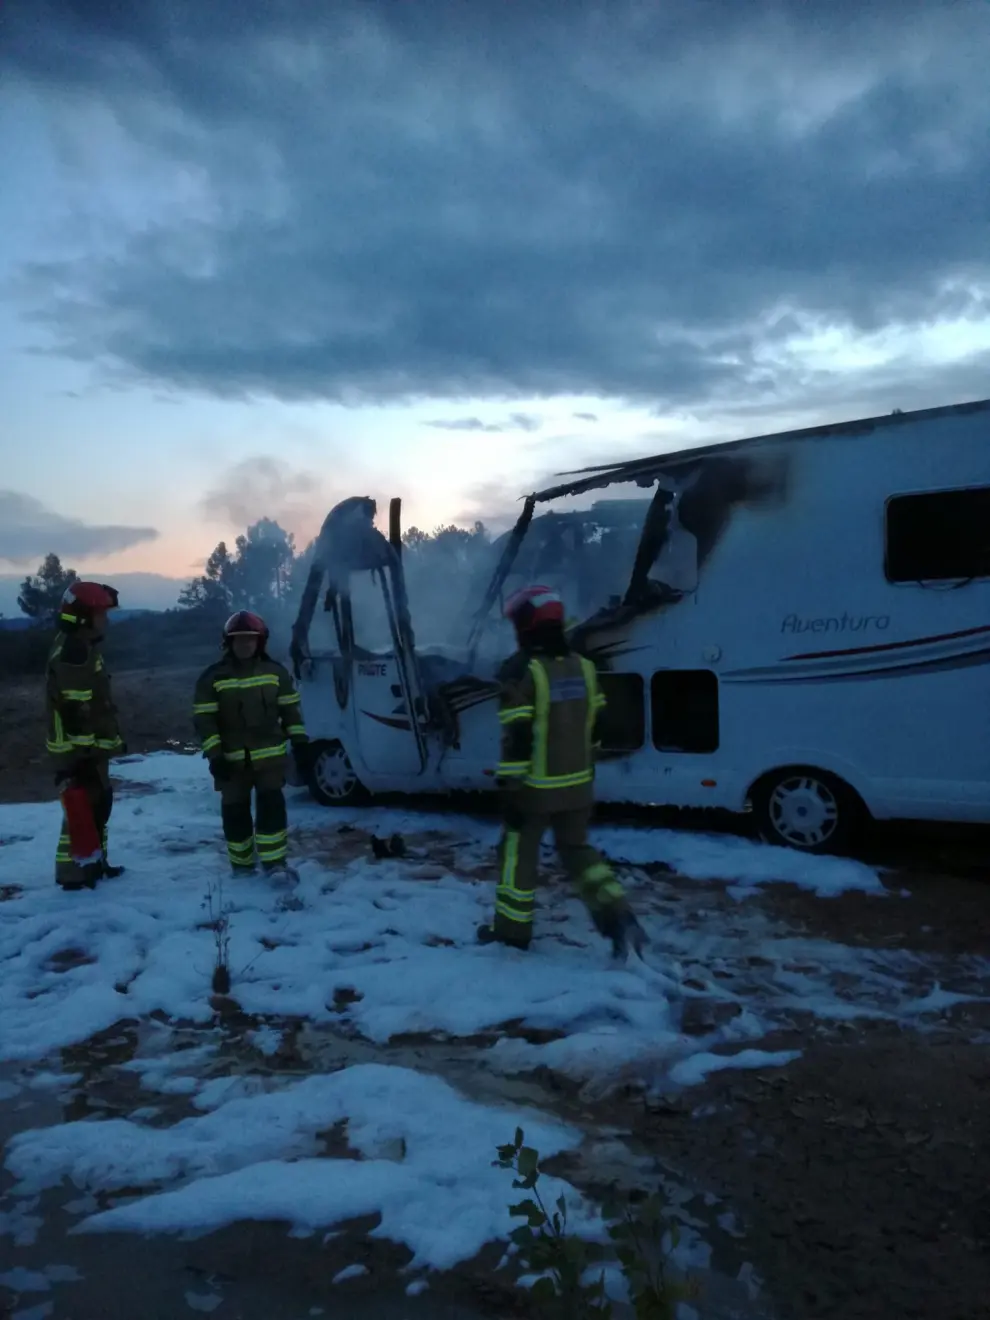 Incendio en una caravana en Teruel